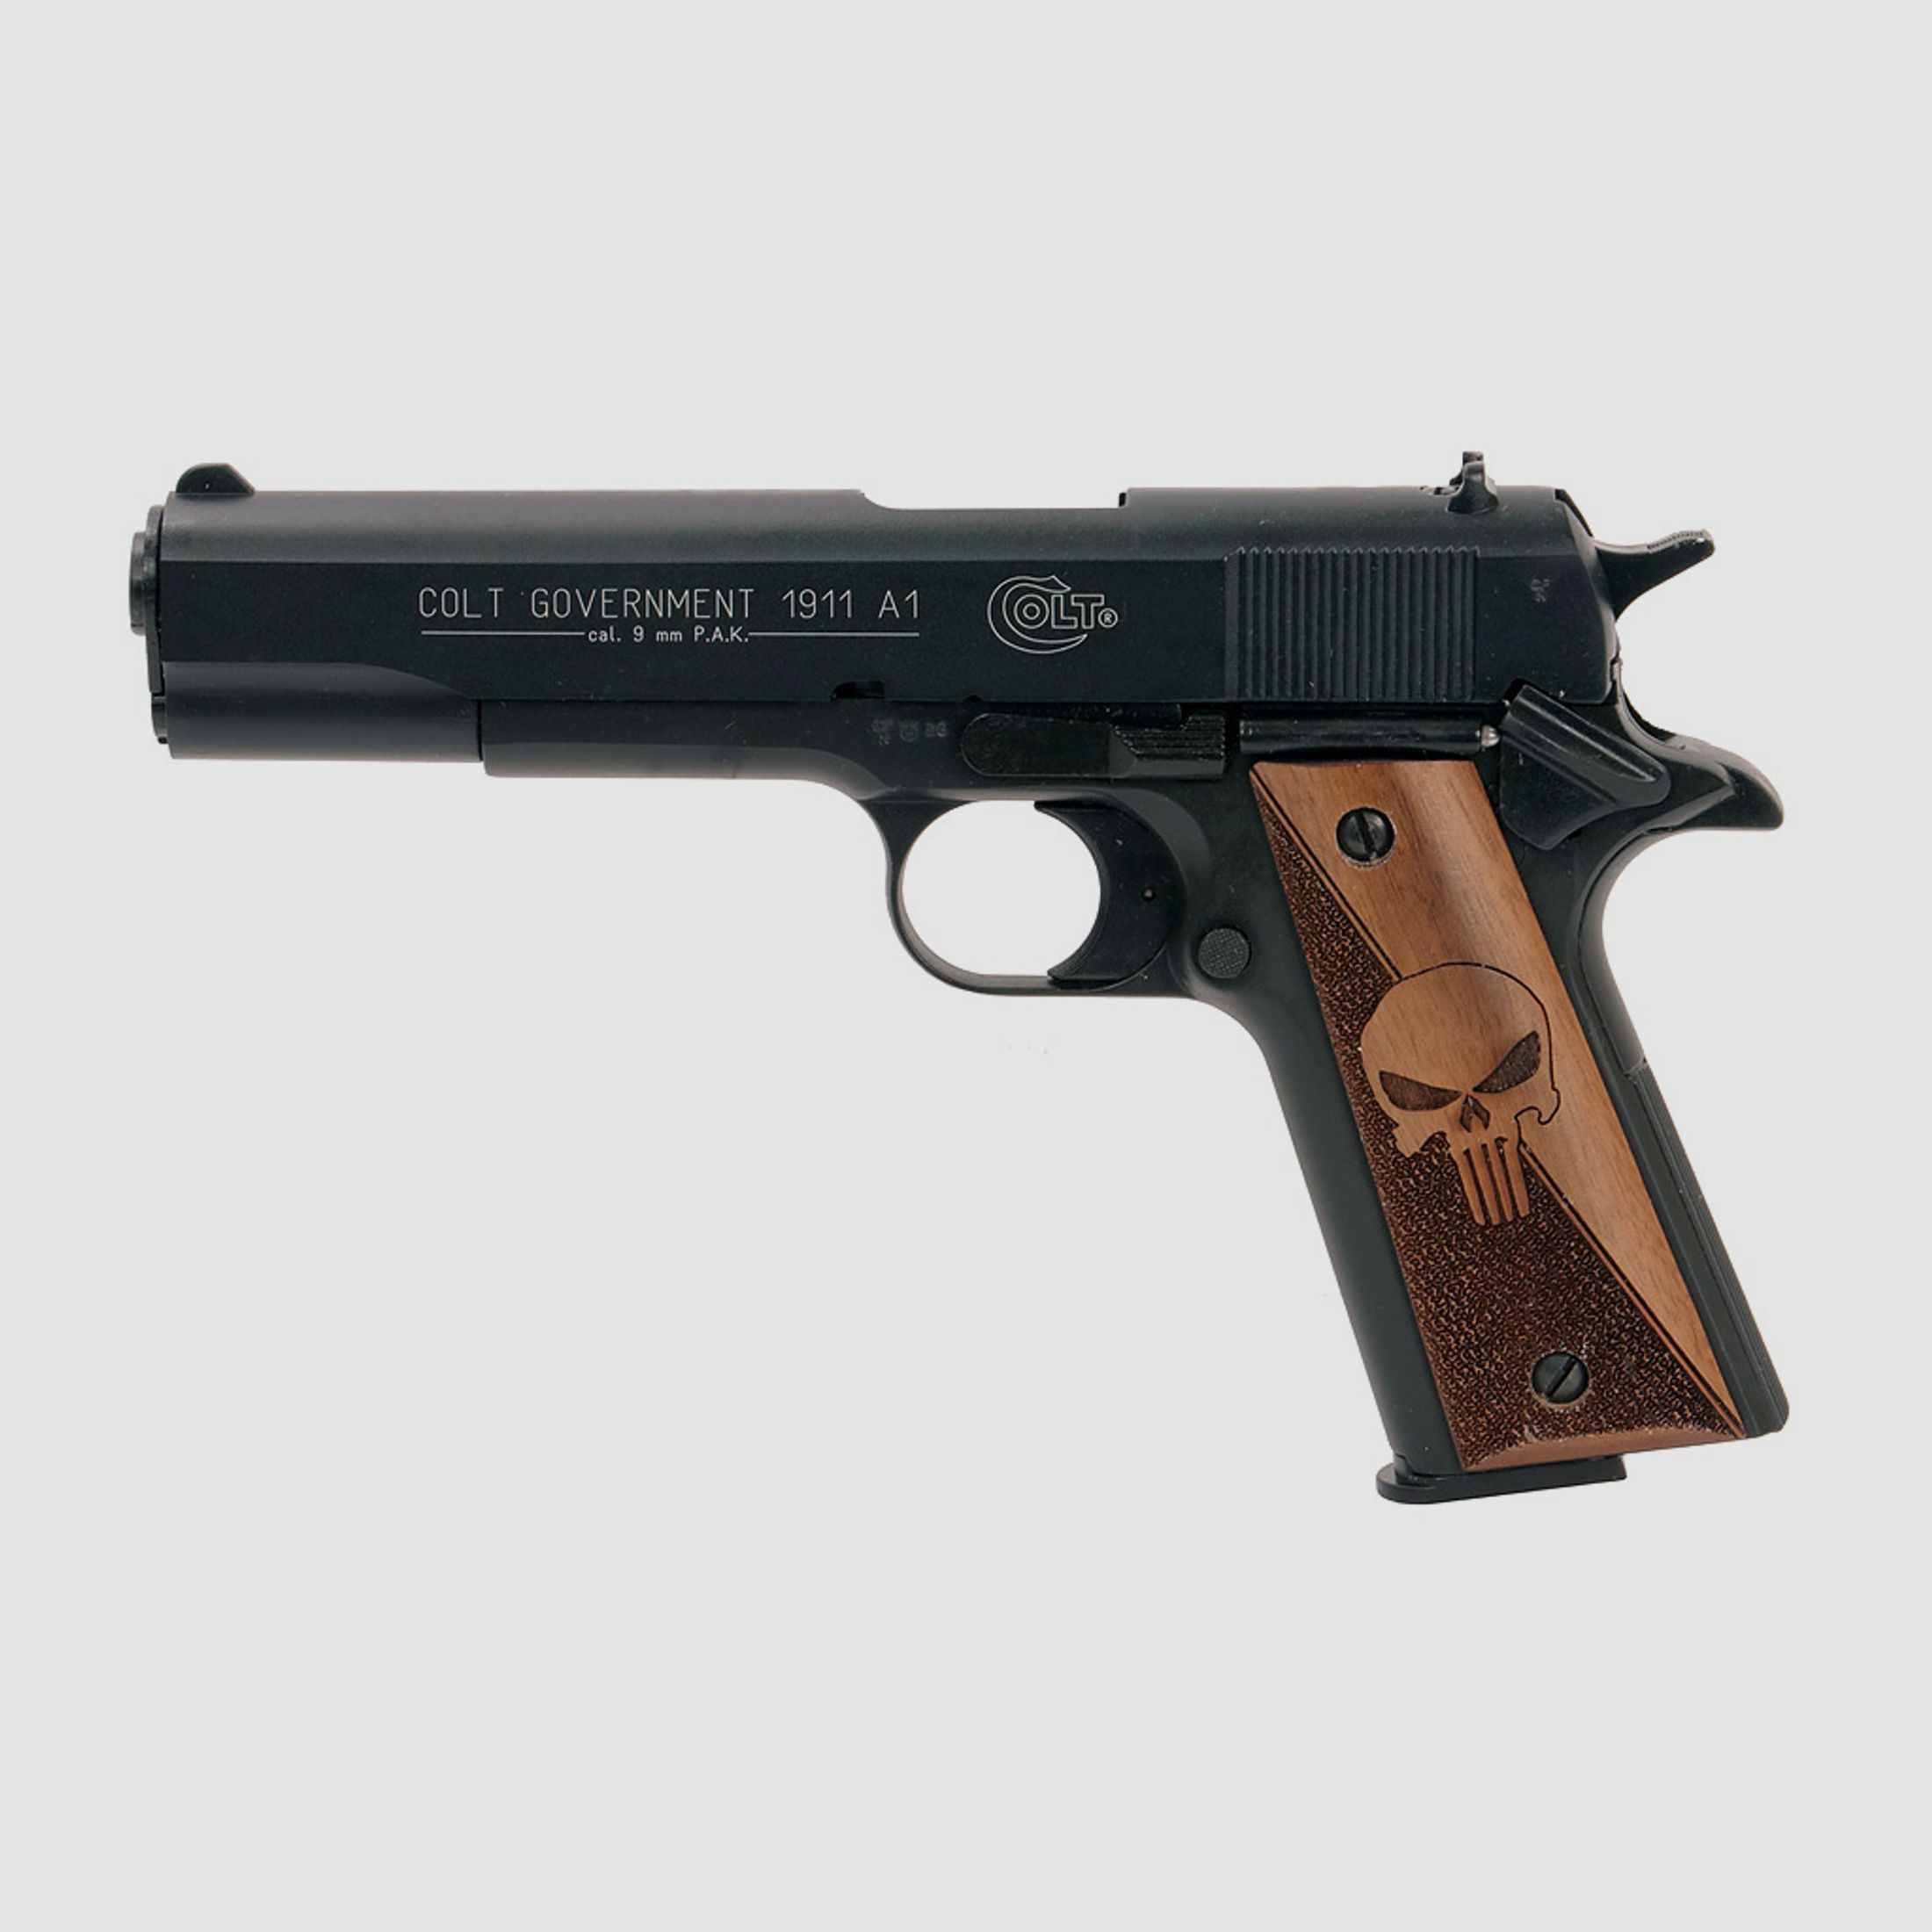 Holzgriffschalen fĂĽr Schreckschuss-, Gas-, Signalpistole Colt 1911 Punisher punziert